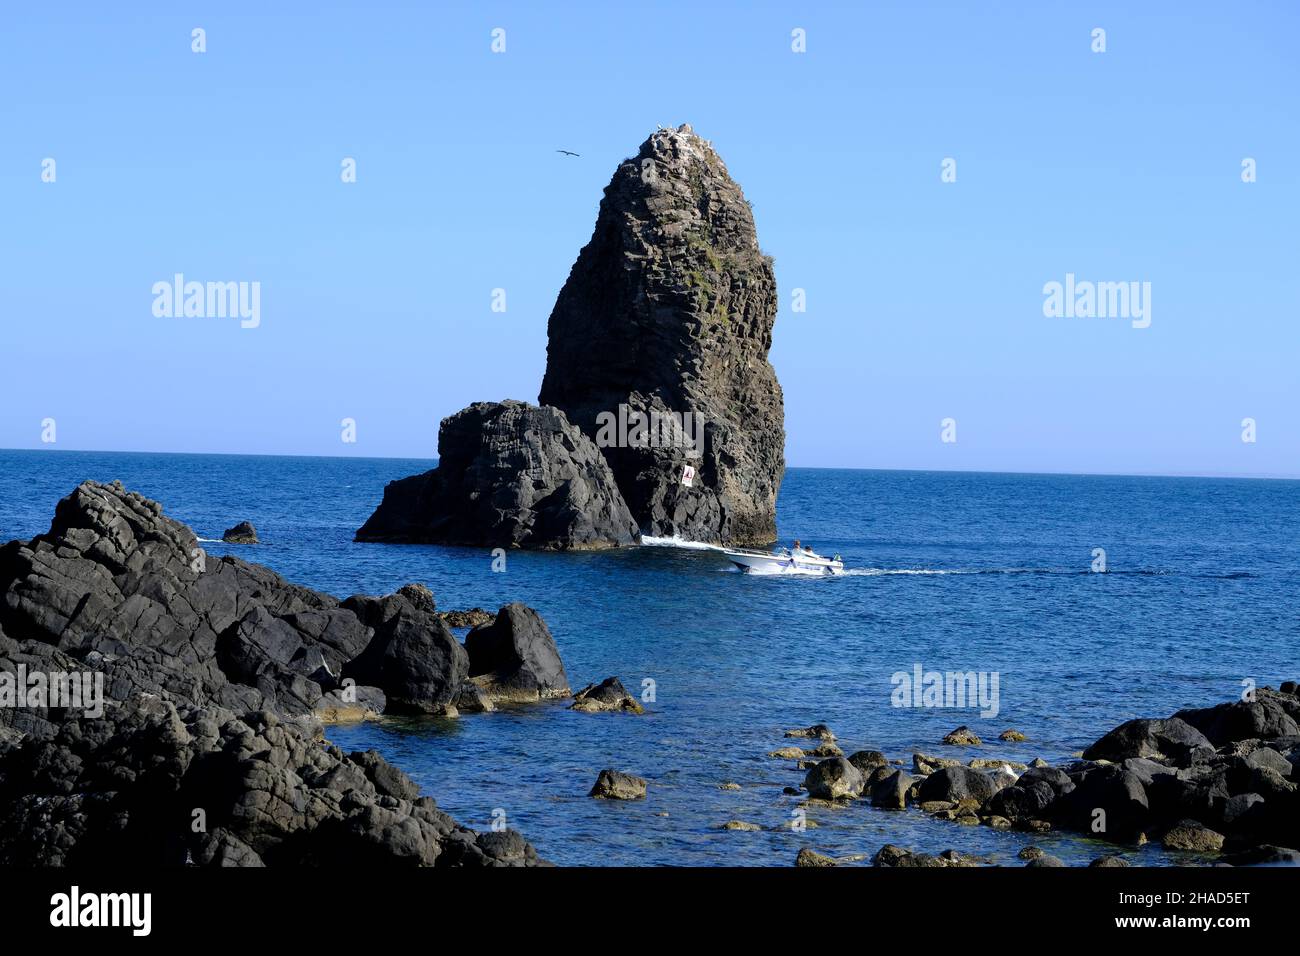 Seascape of Cyclopean Isles, Aci Trezza, Aci Castello, Province of Catania, Sicily, Italy Stock Photo